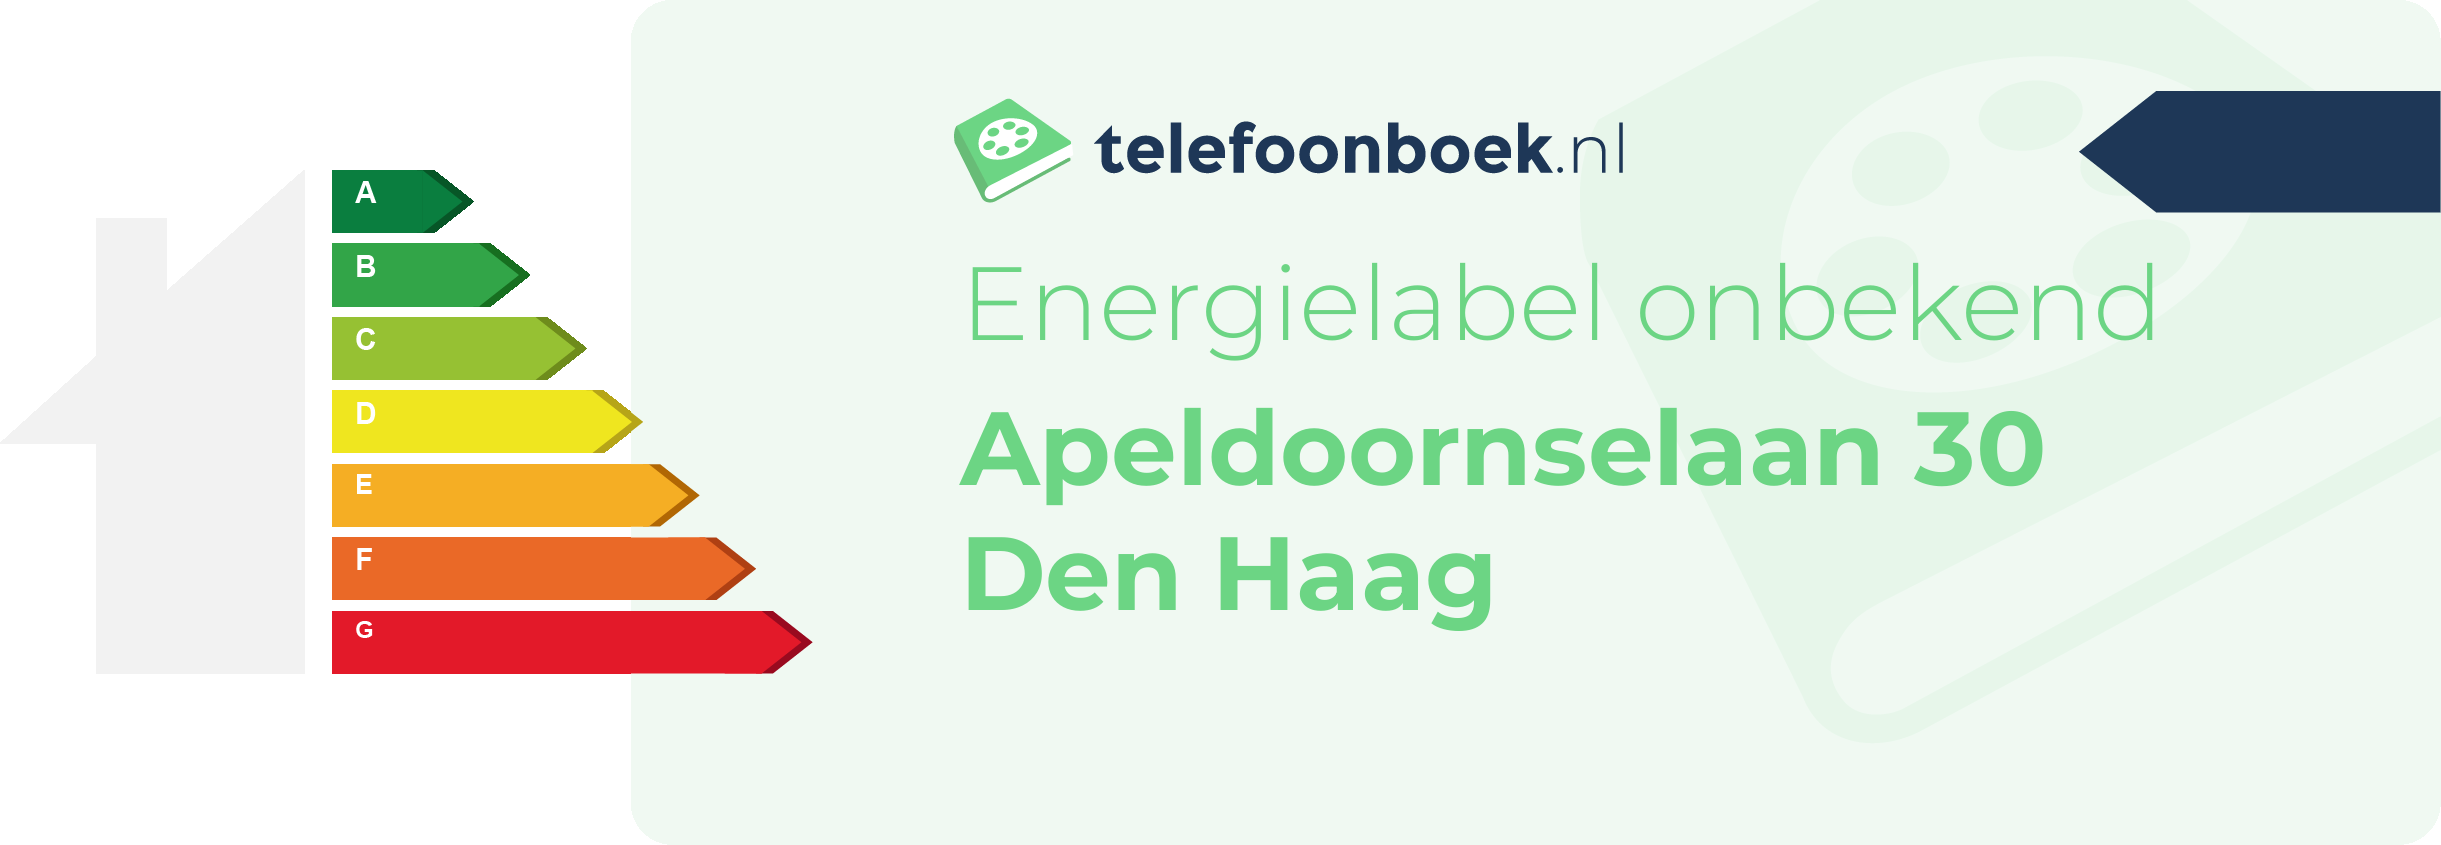 Energielabel Apeldoornselaan 30 Den Haag